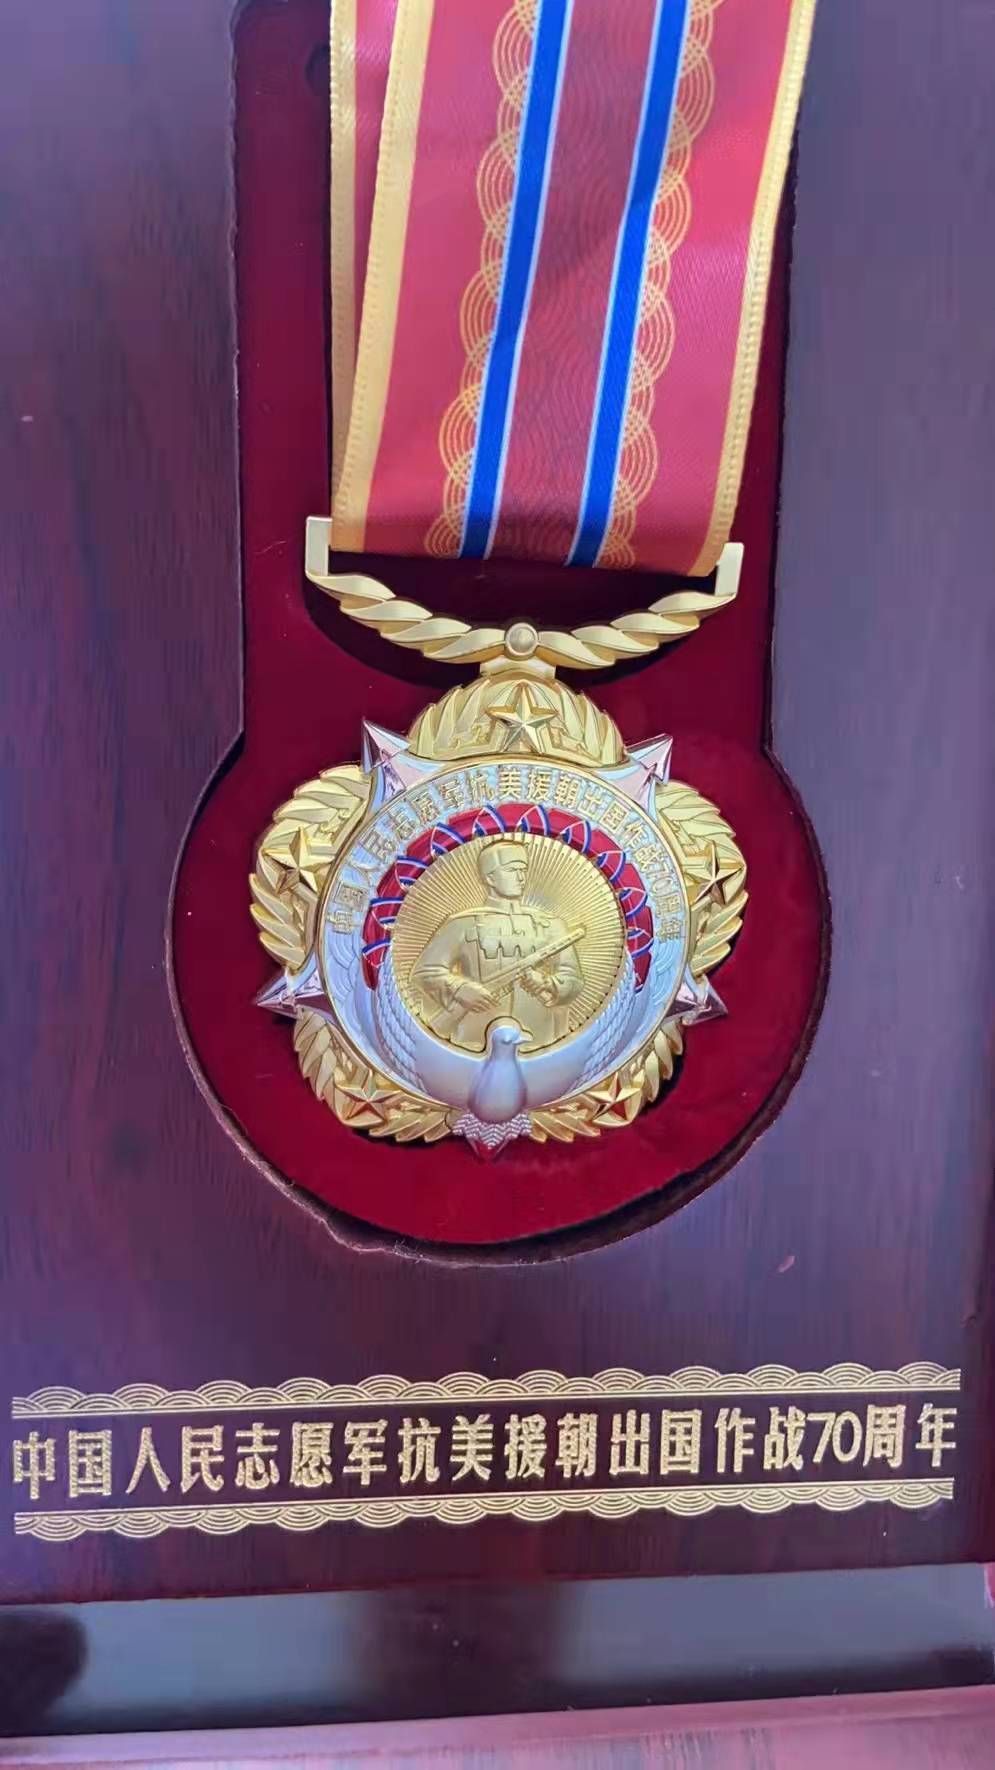 老年医学科|抗美援朝老战士将70周年纪念勋章赠与余姚市人民医院老年医学科